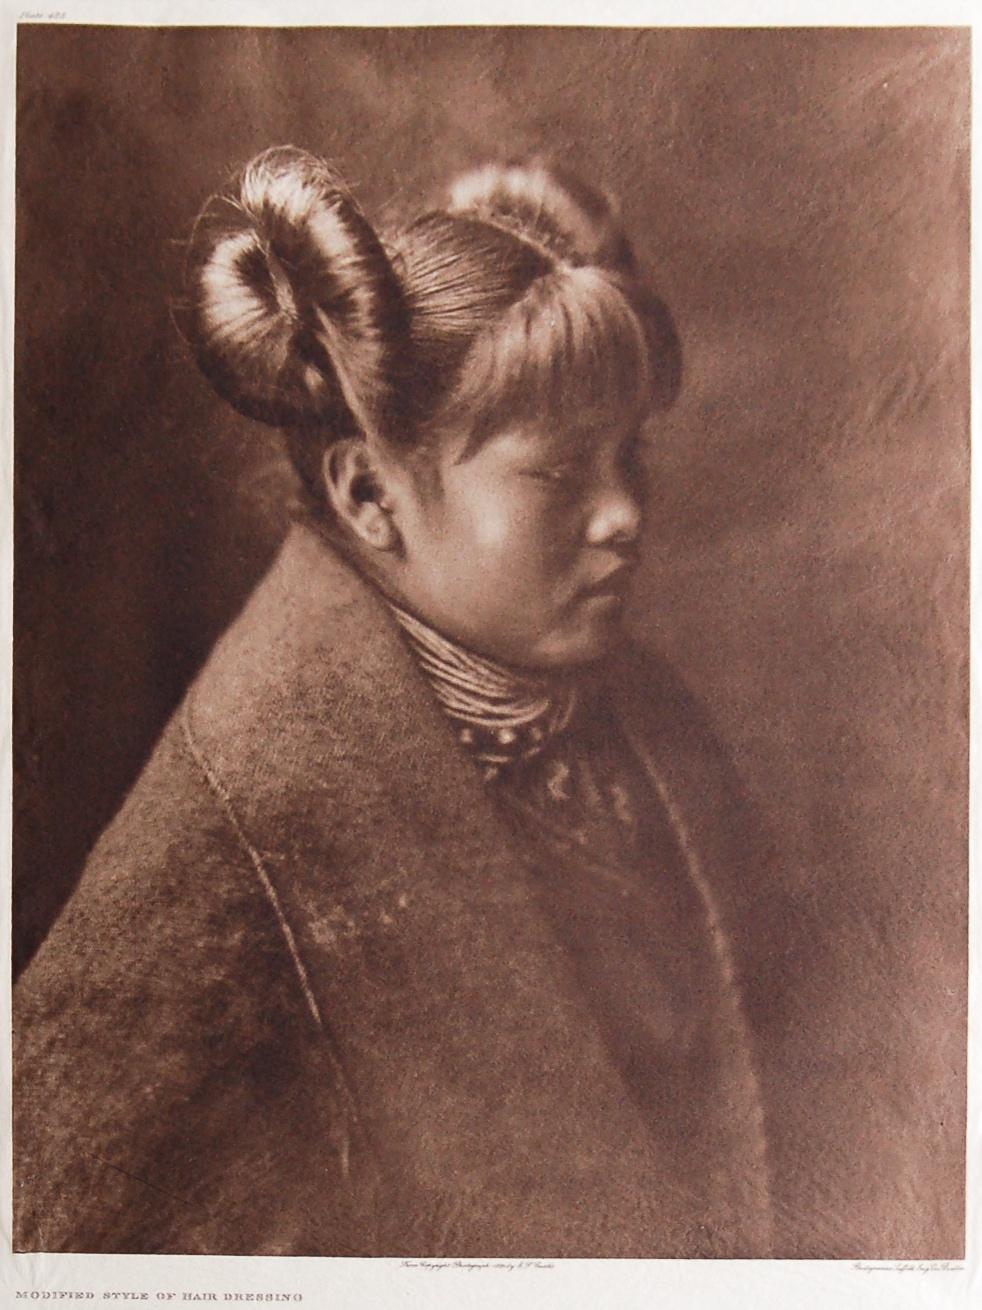 Hopi-Frau, 1905 – Photograph von Edward S. Curtis